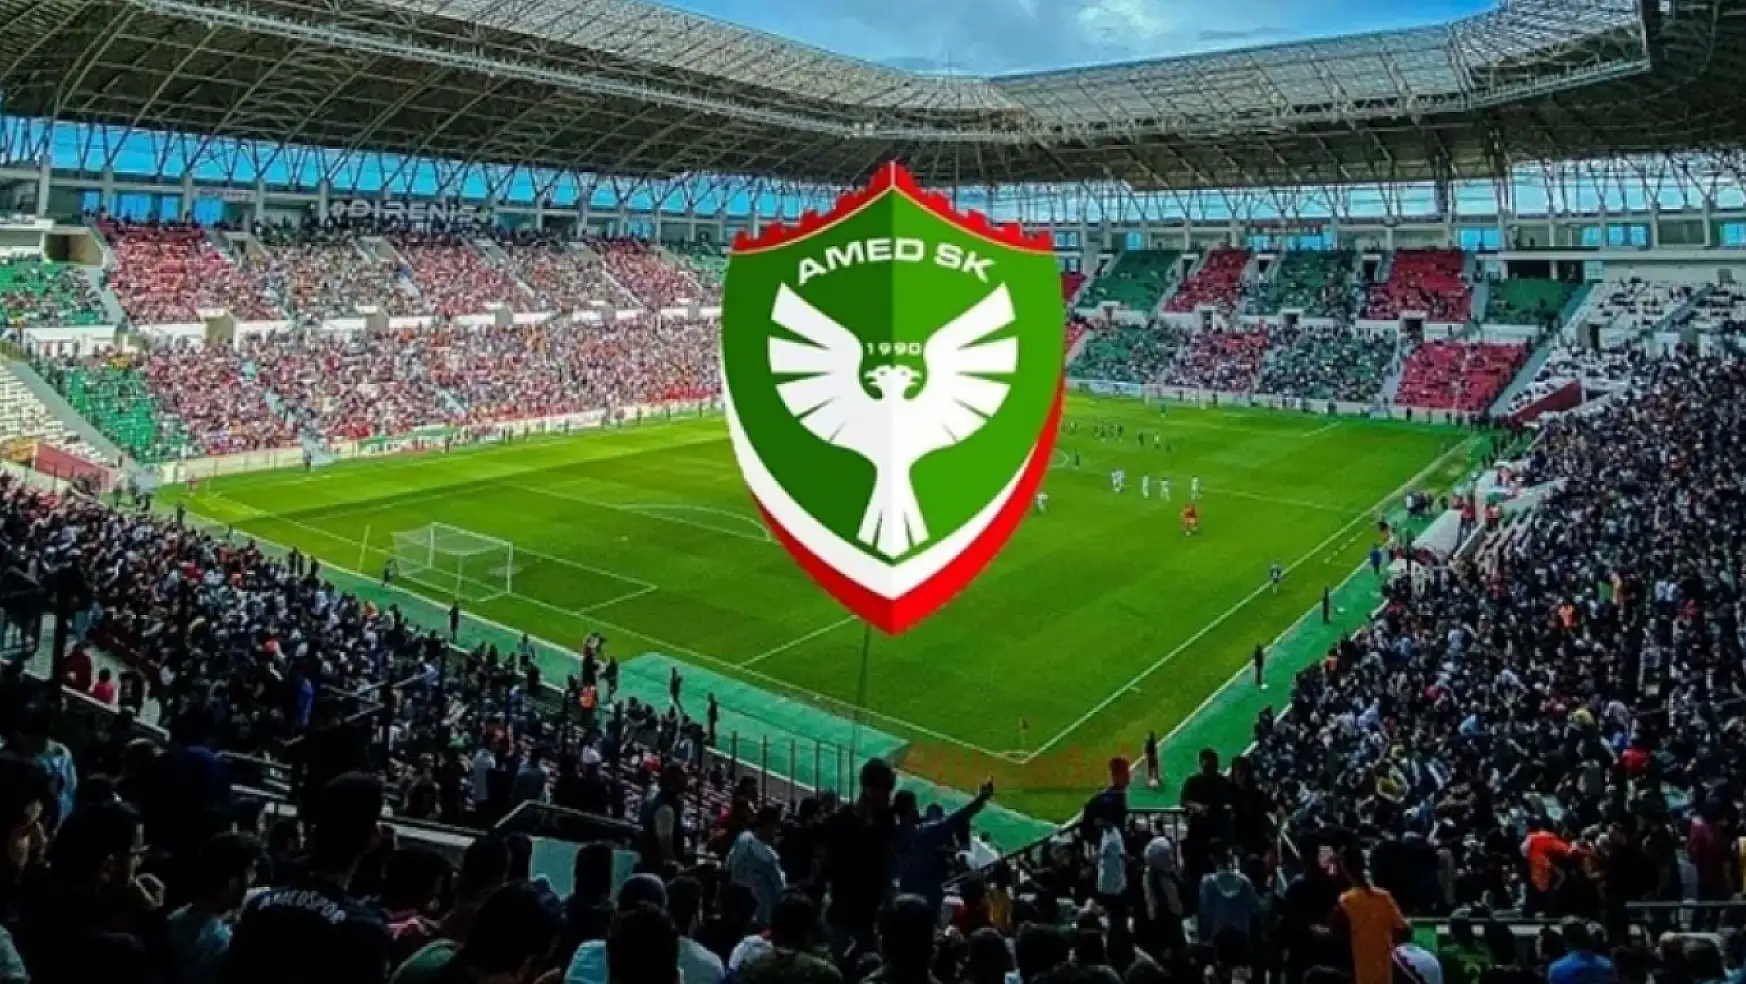 Büyükşehir Belediyesi, Amedspor maçı için Van'da ekran kuracak